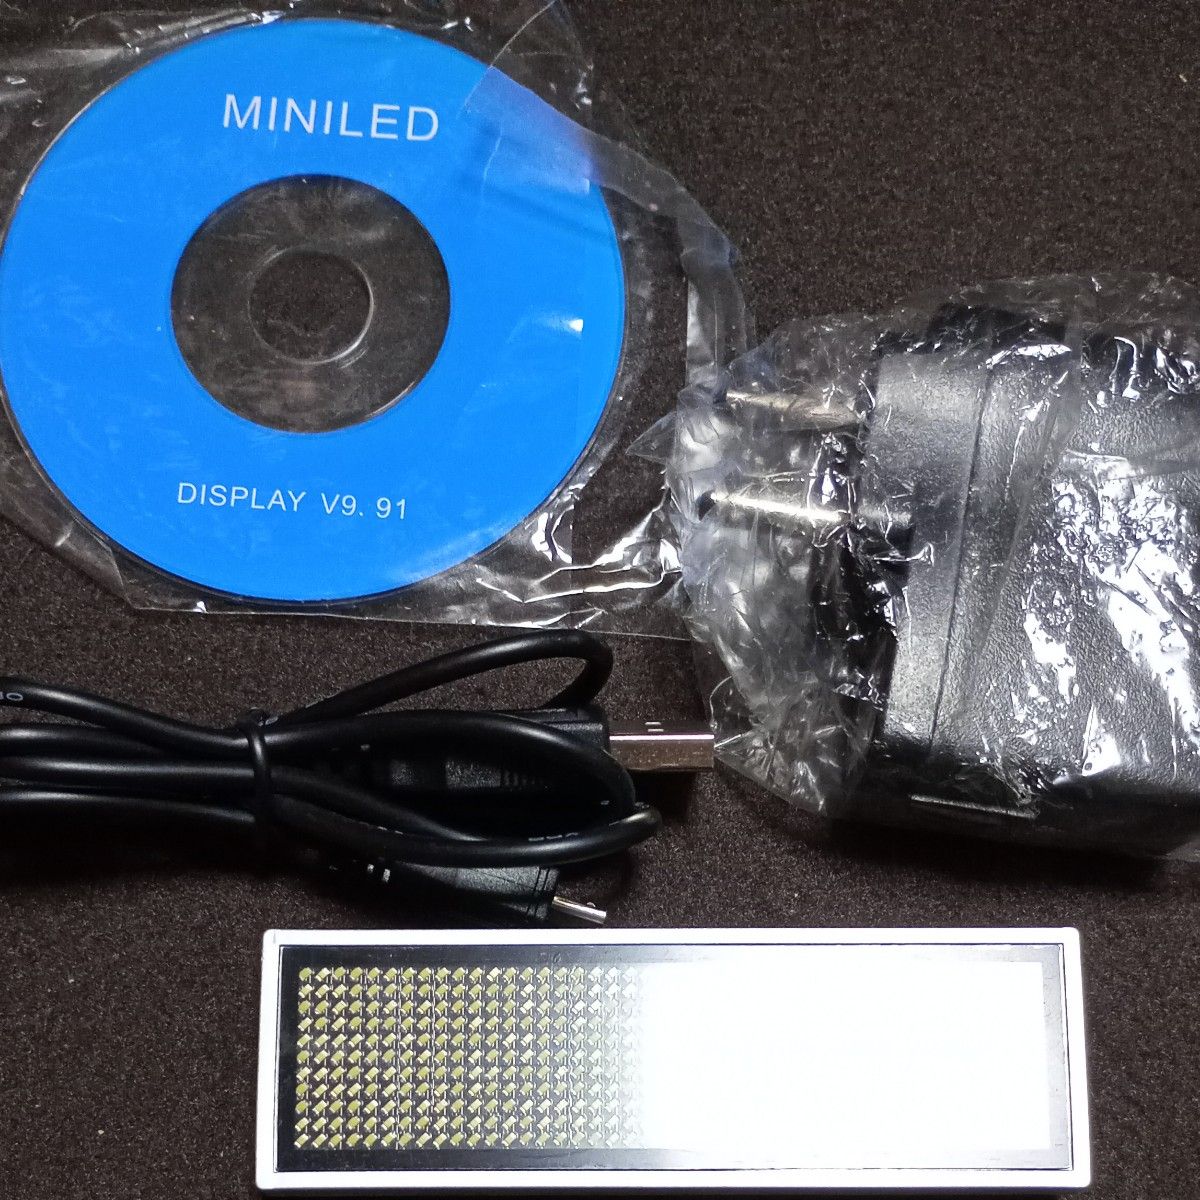  MINILED ミニネオンサイン 電光掲示板 名札 自作 メッセージ LED 電子 